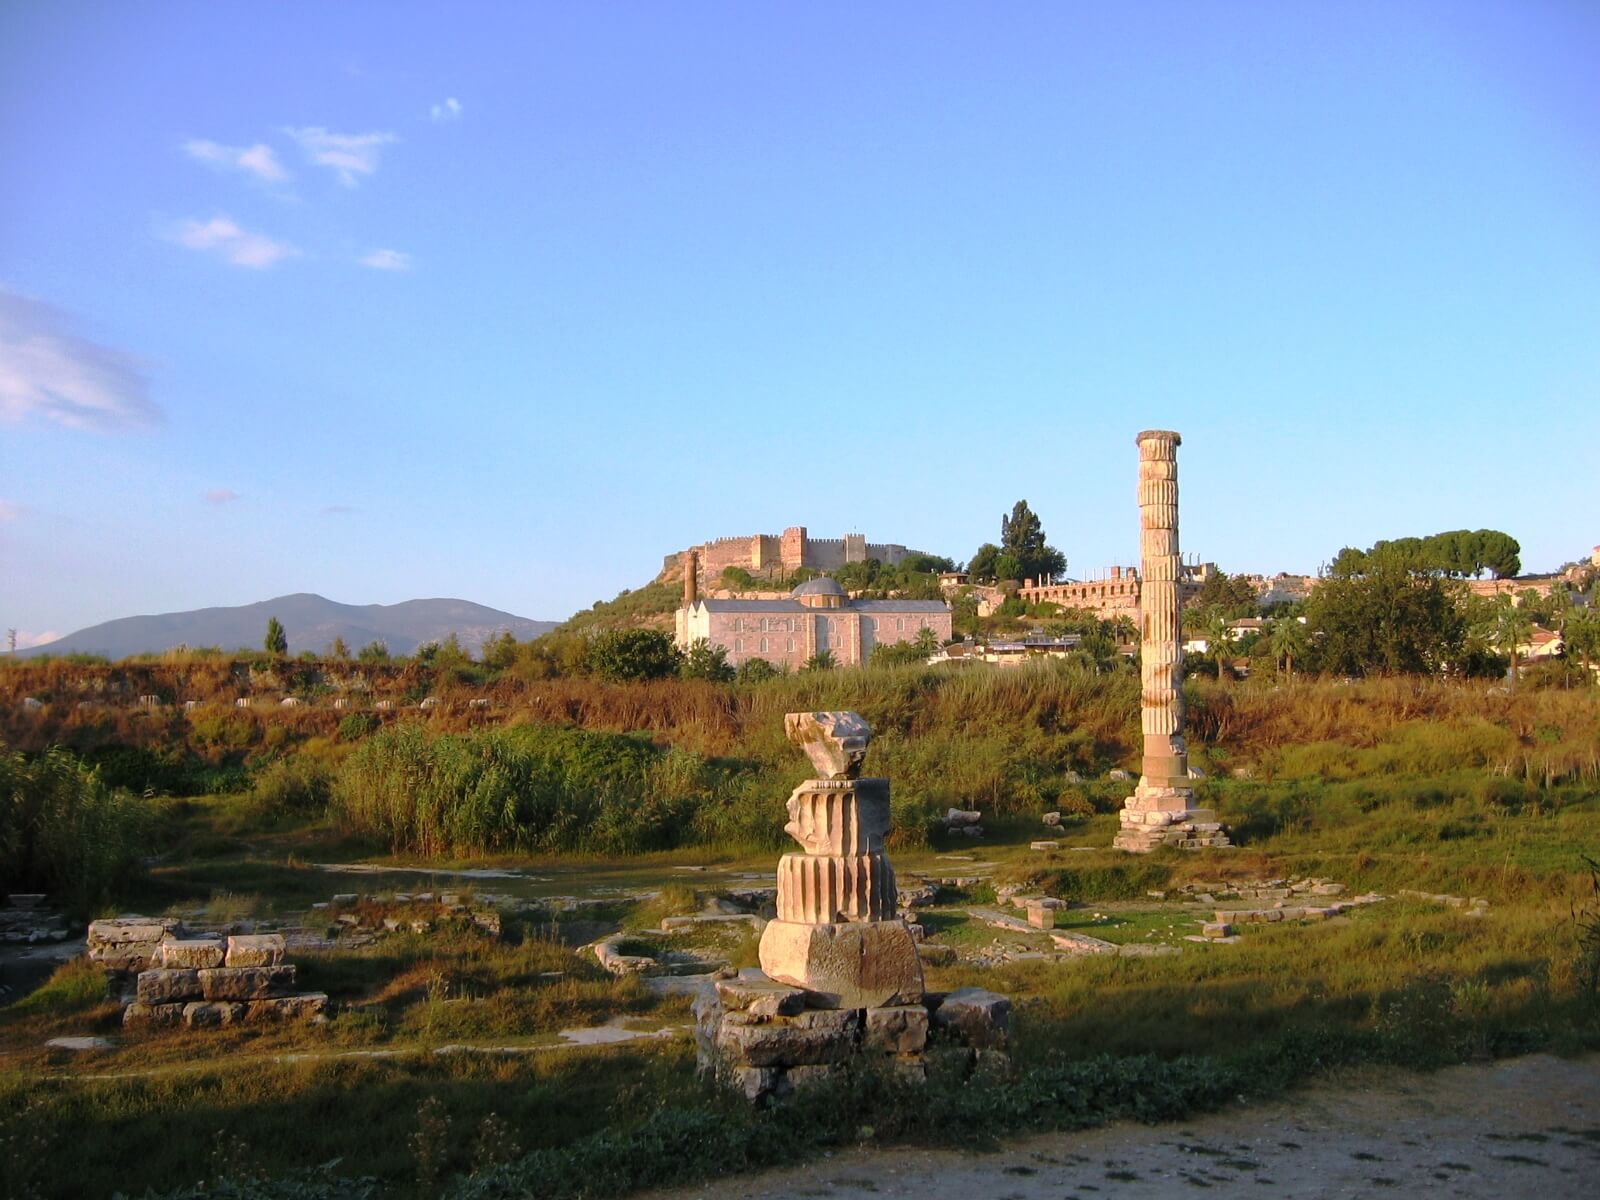 Best Of Ephesus Private Tour - 3